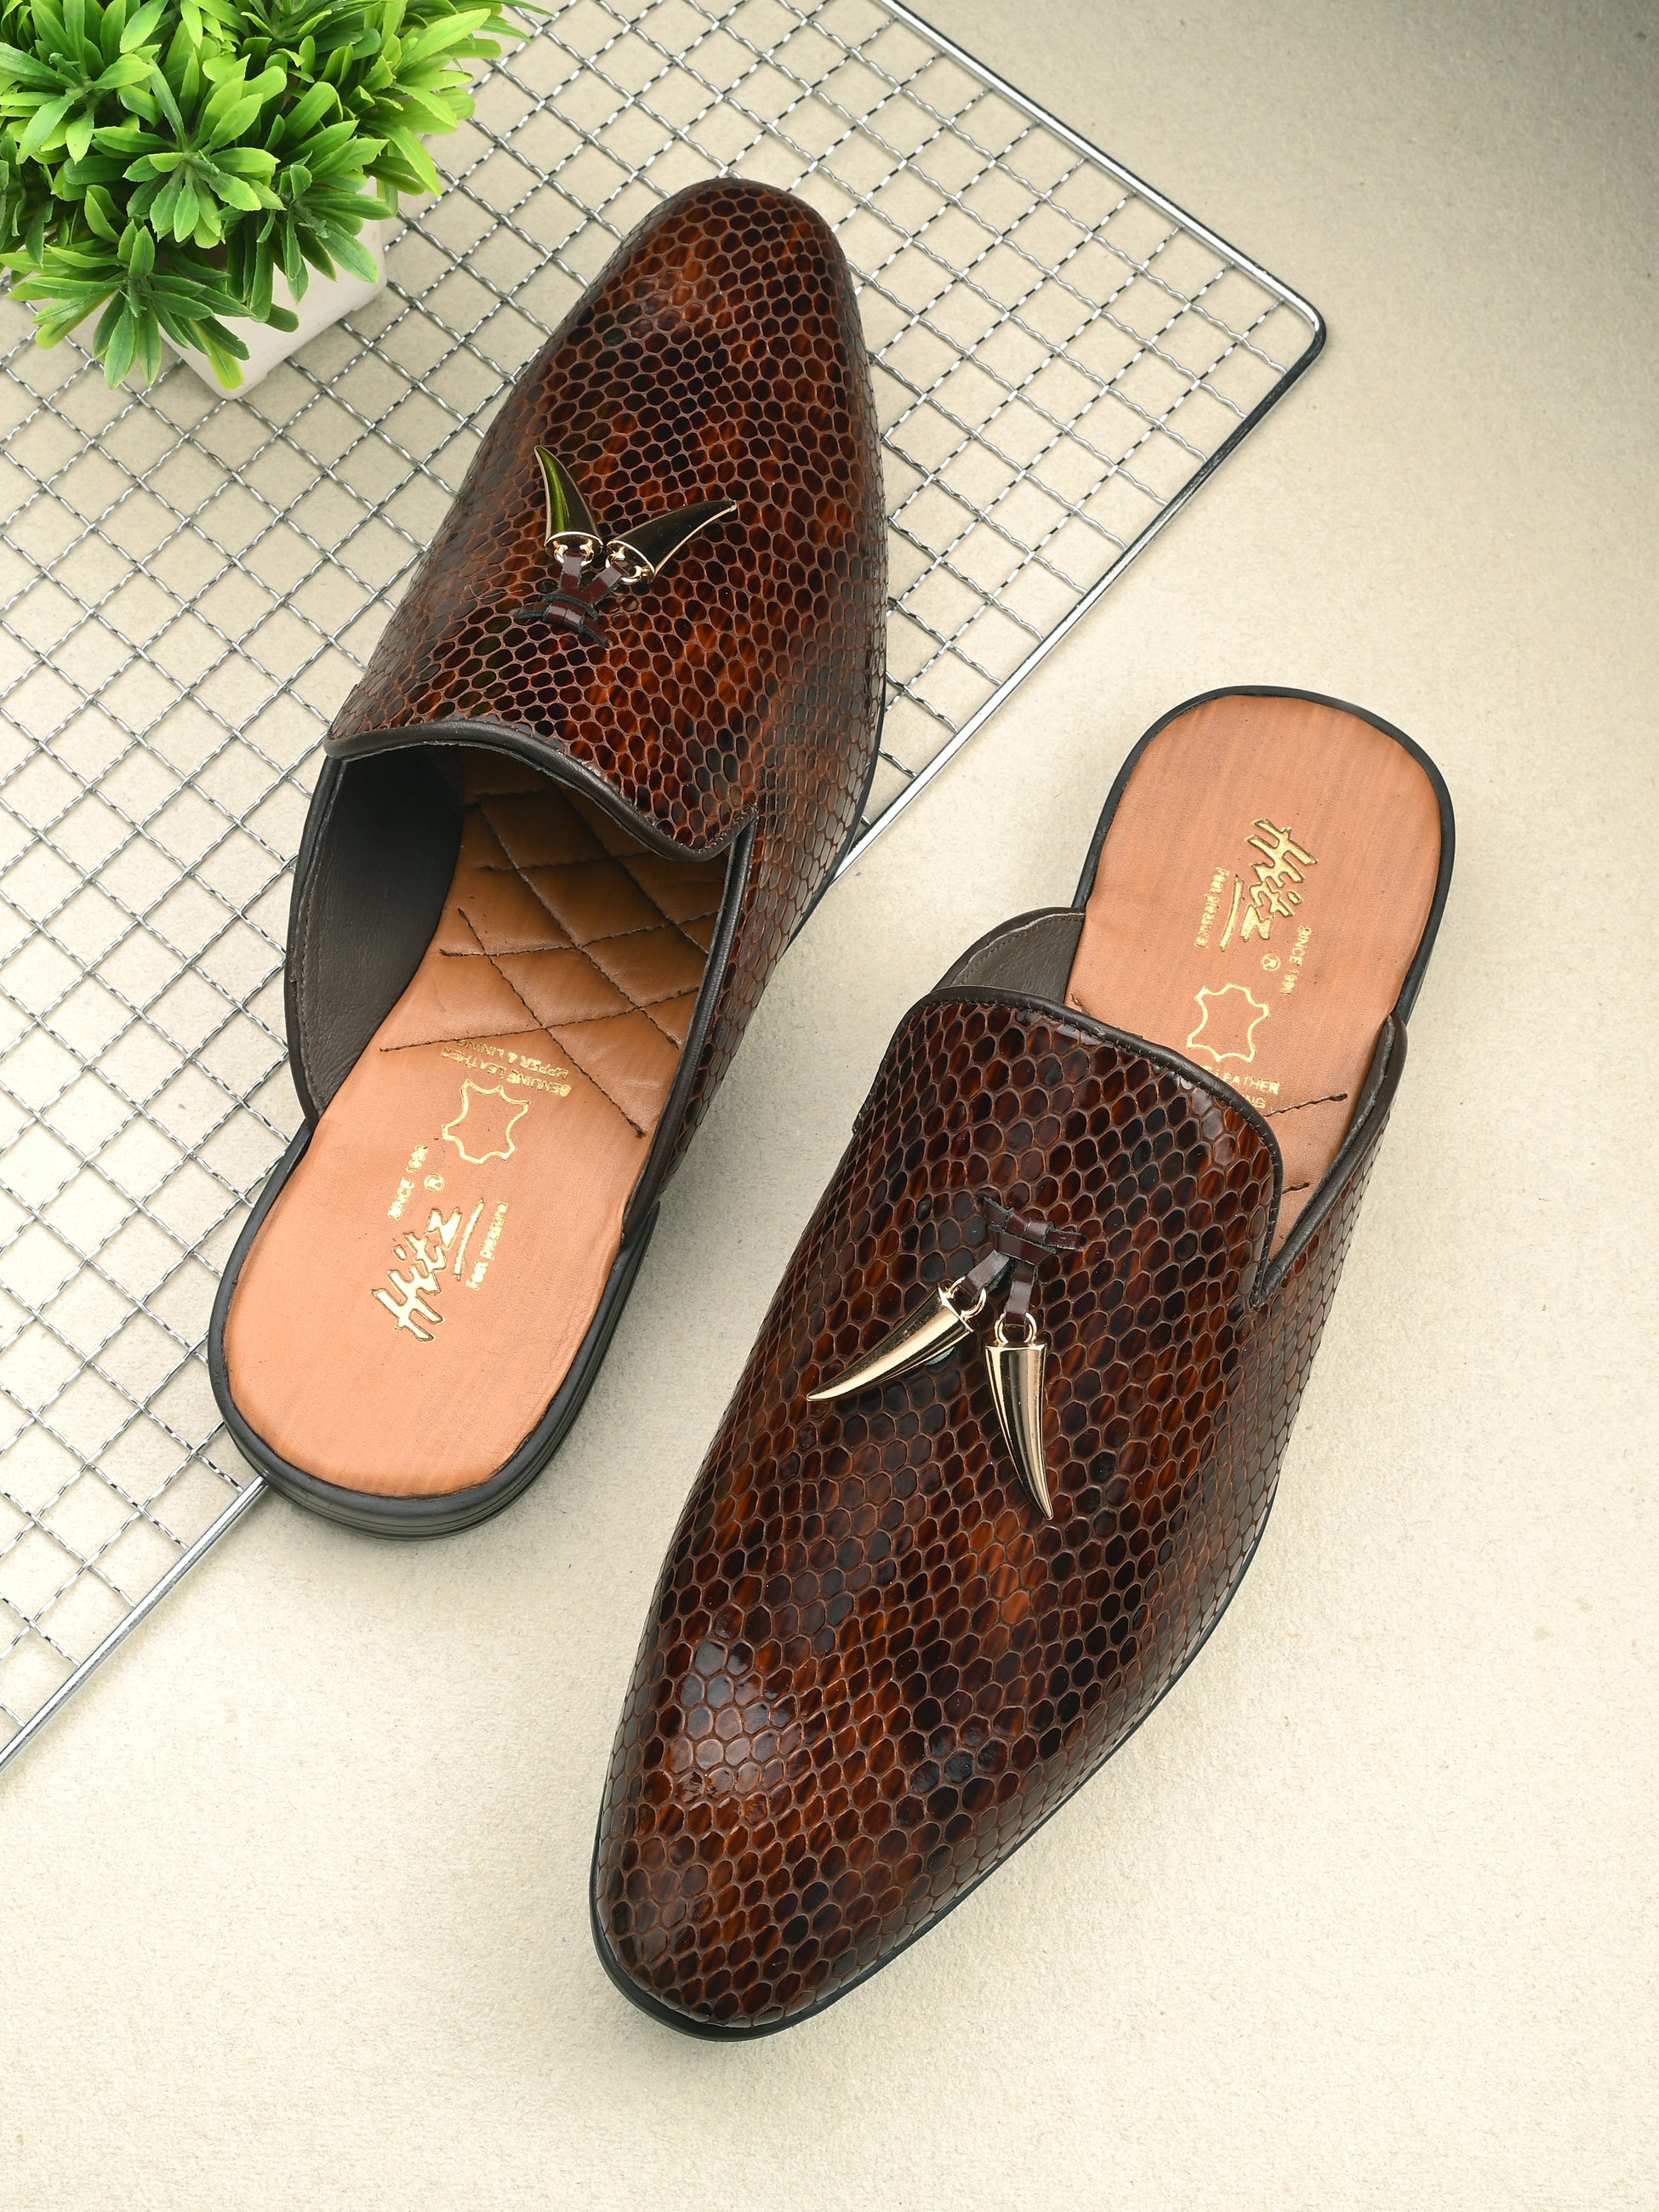 Hitz Men's Brown Leather Half Shoes Ethnic Wear Mule Shoes – Hitz Shoes  Online